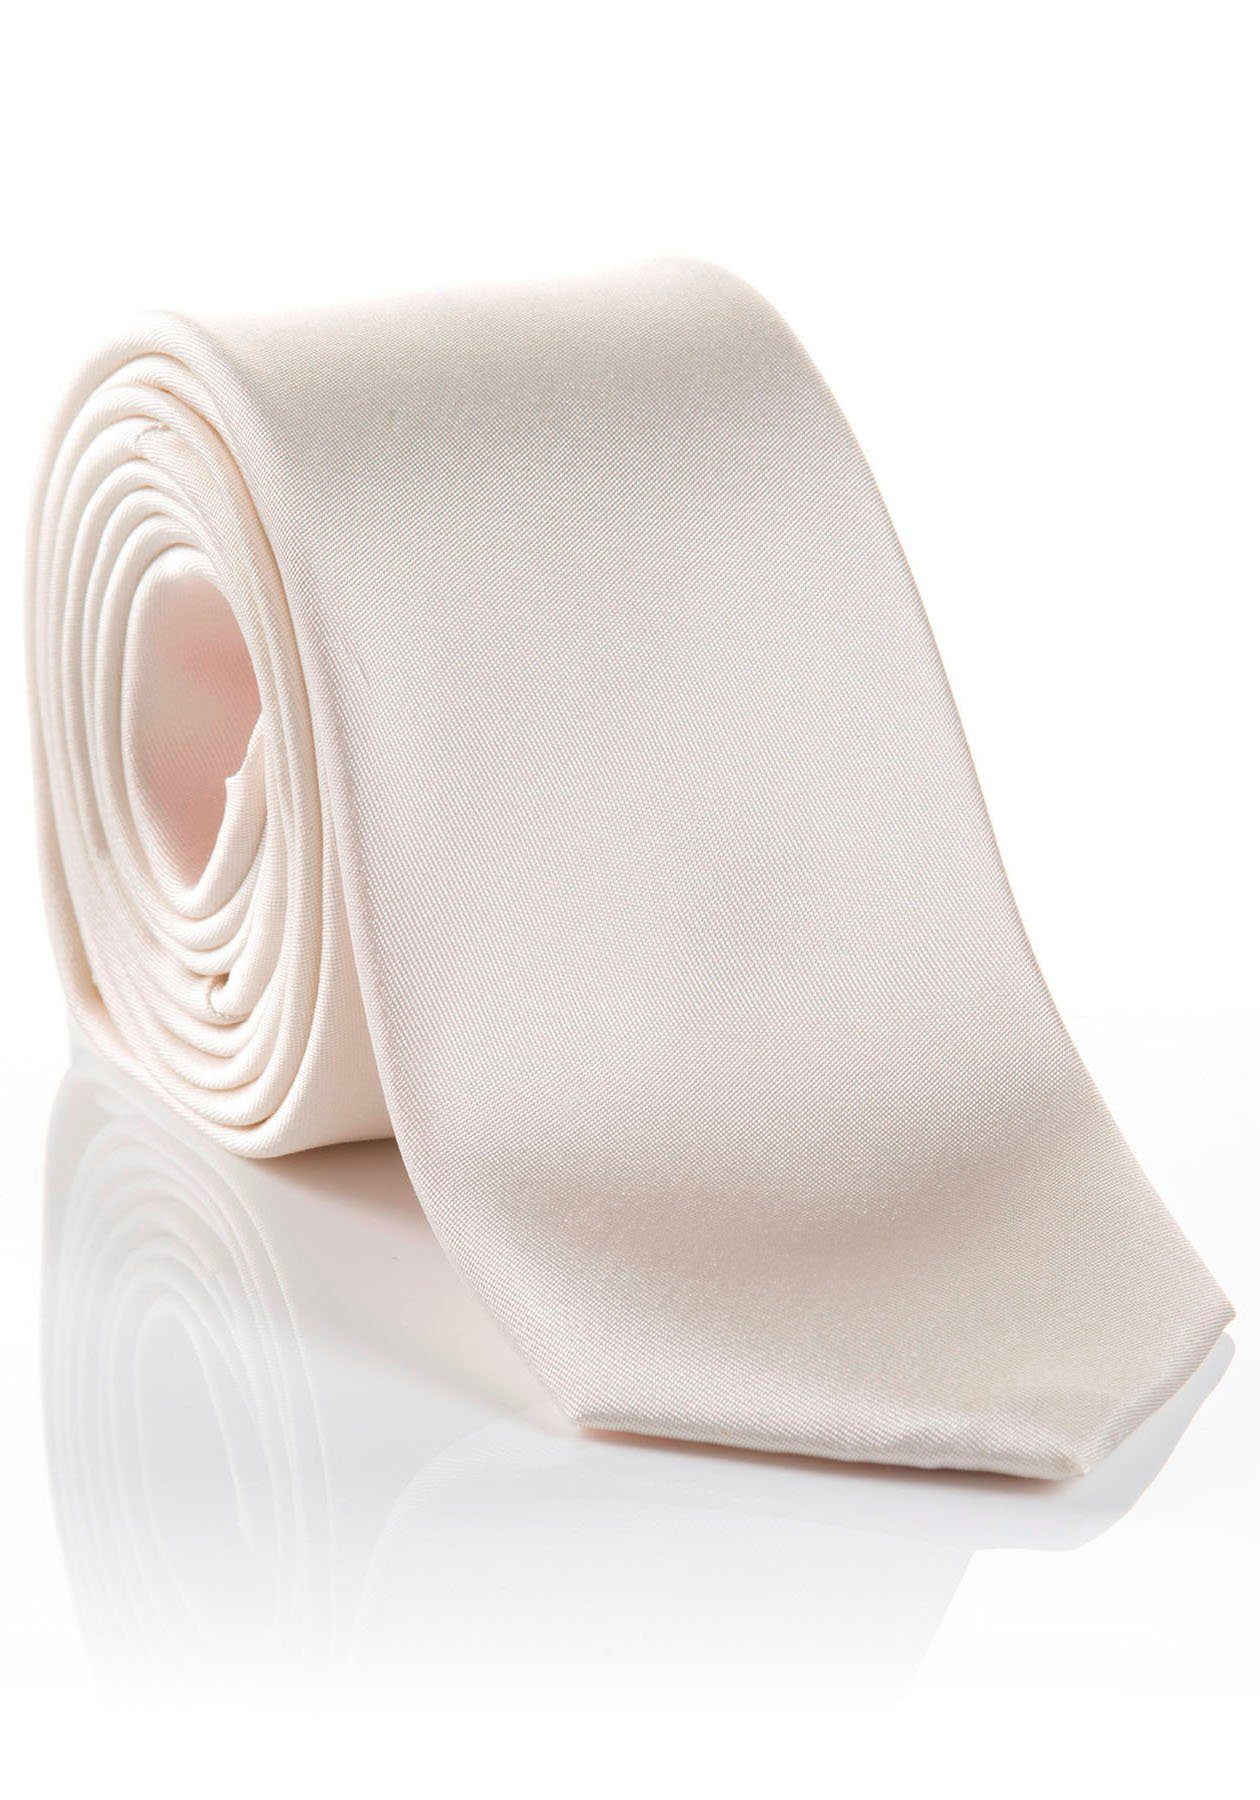 Limitierter Outlet-Preis! MONTI Krawatte LIVIO Hochwertig verarbeitete Tragekomfort Seidenkrawatte hohem mit